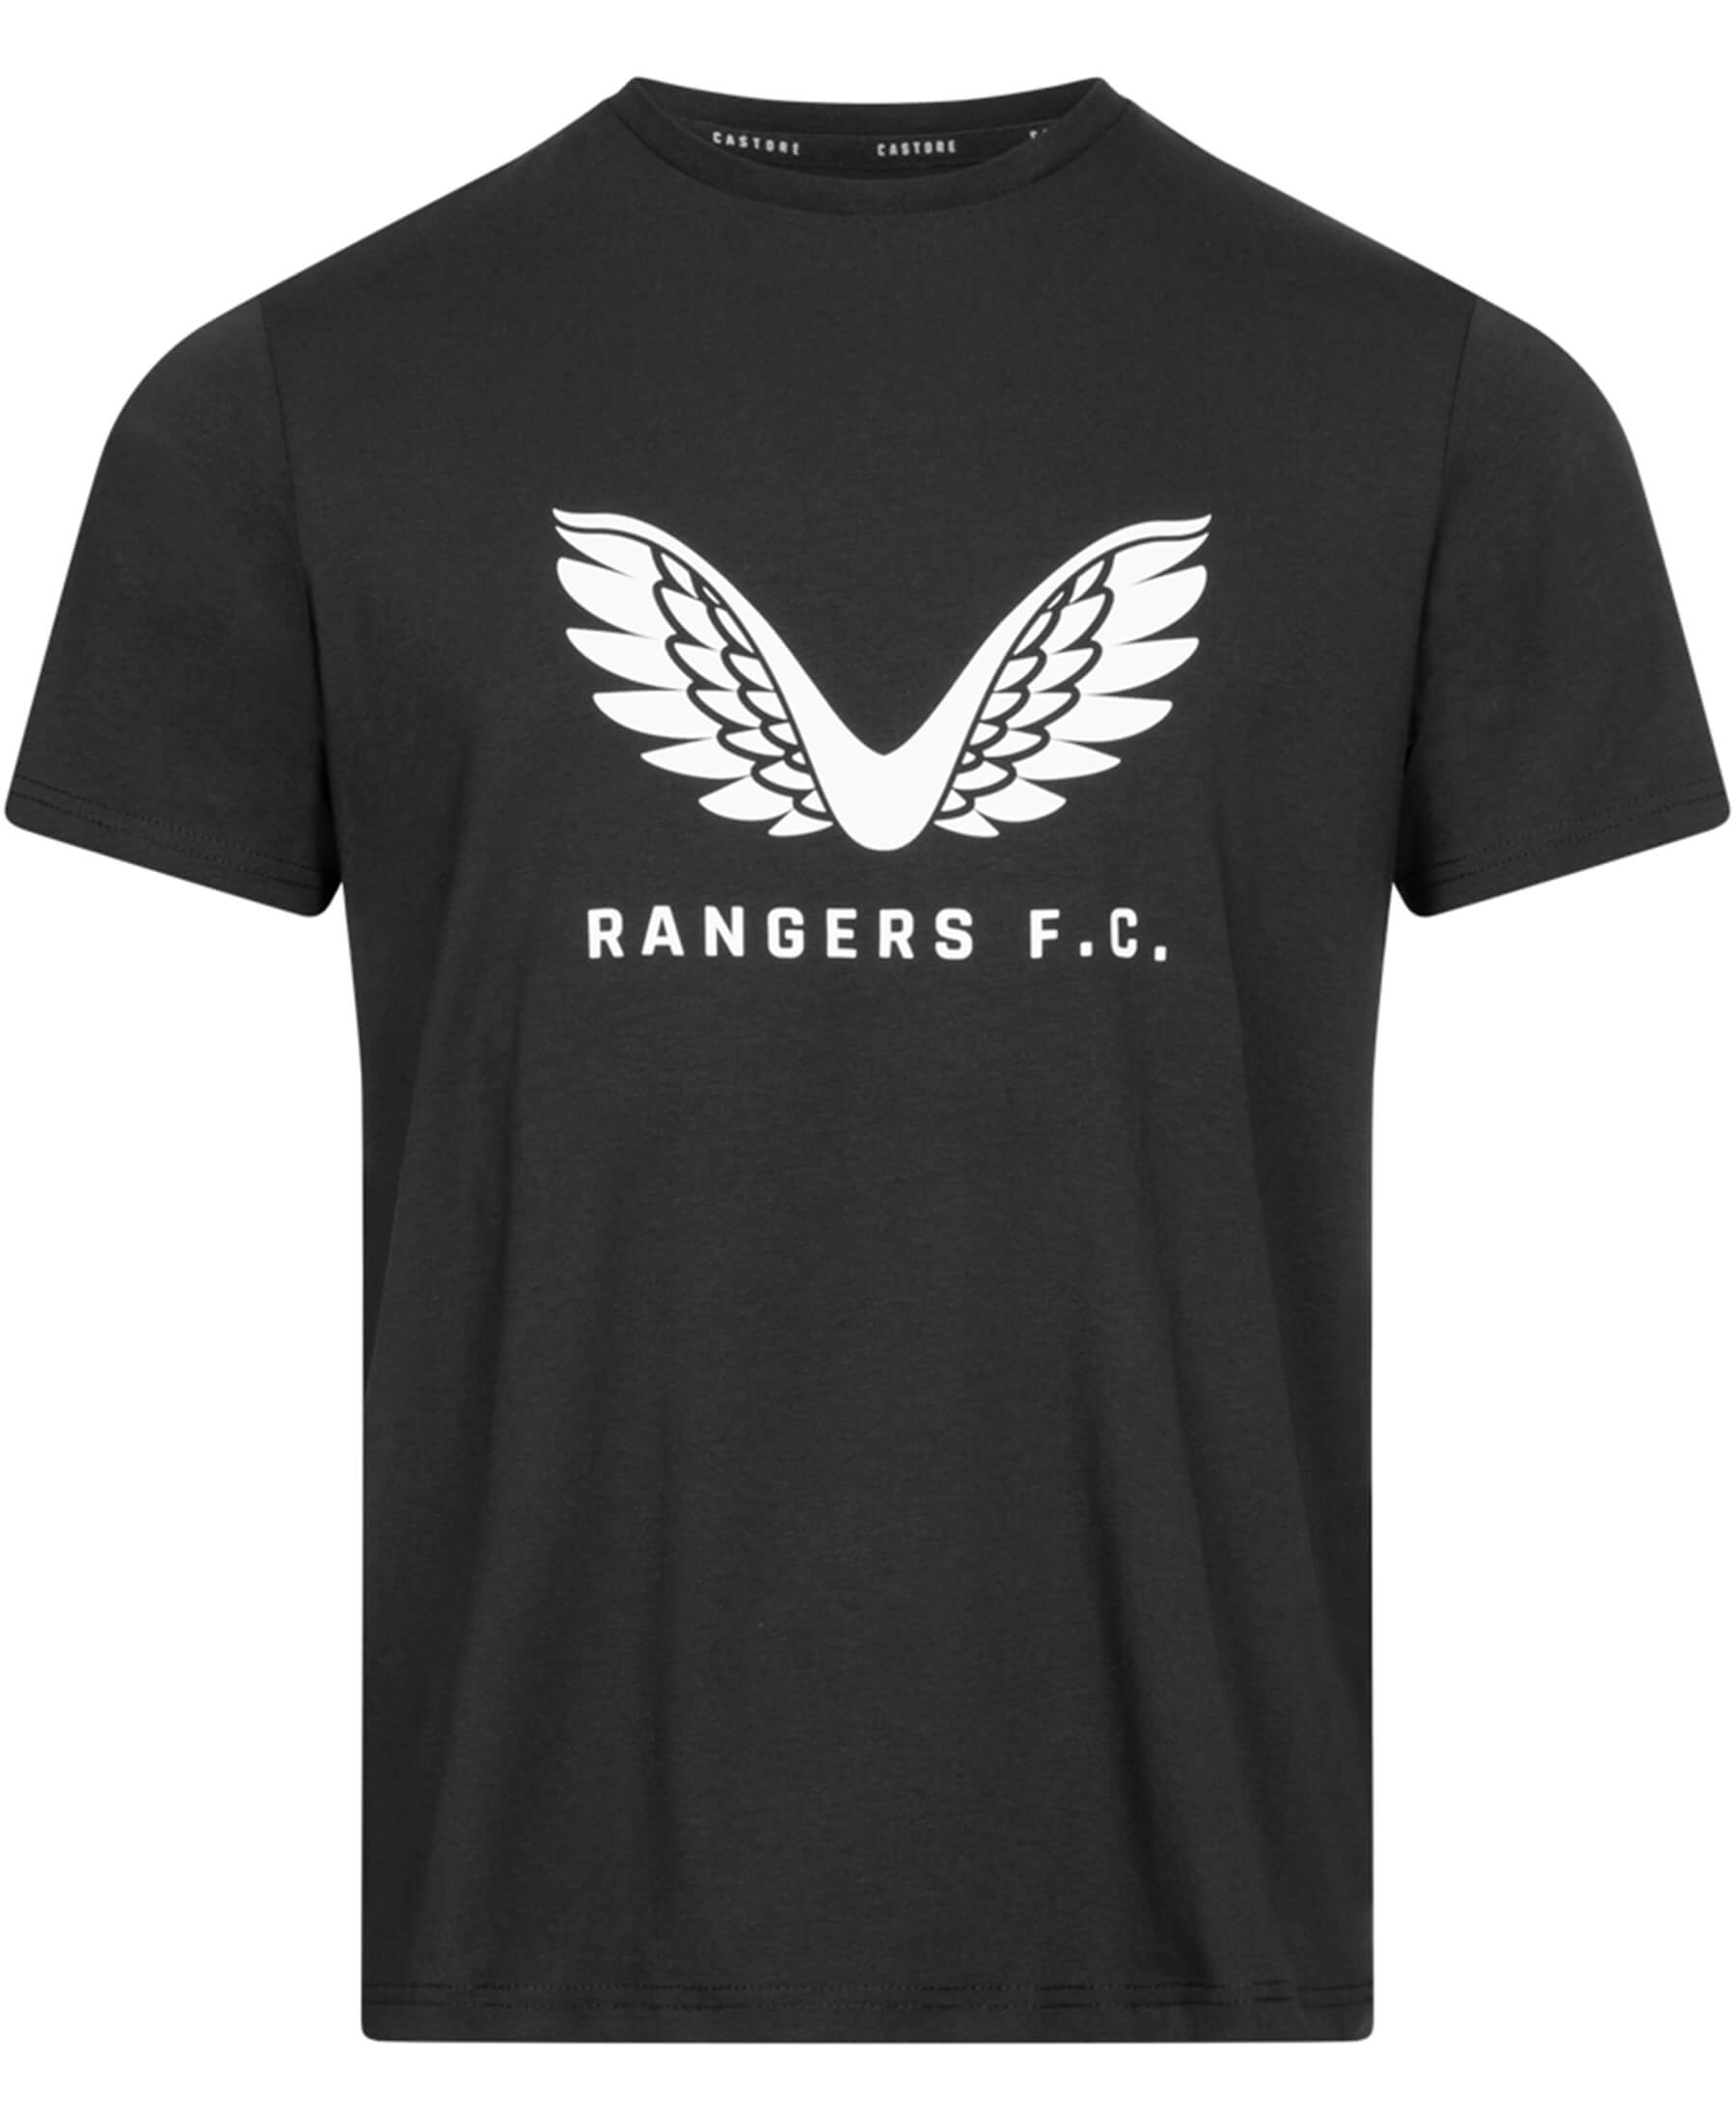 Erleben Sie das offizielle Castore Glasgow Rangers FC Travel Logo T-Shirt (Artikel-Nr: TM1066), ein Must-Have für alle Fußballenthusiasten. Dieses hochwertige schwarze T-Shirt mit dem charakteristischen Rangers FC Logo ist sowohl modisch als auch bequem. Zeigen Sie Ihre Leidenschaft für den Verein mit Stil und tragen Sie es im Alltag oder auf Reisen. Hochwertige Materialien und ein modernes Design machen dieses Shirt zu einem echten Highlight. Erhältlich bei SHOP4TEAMSPORT.